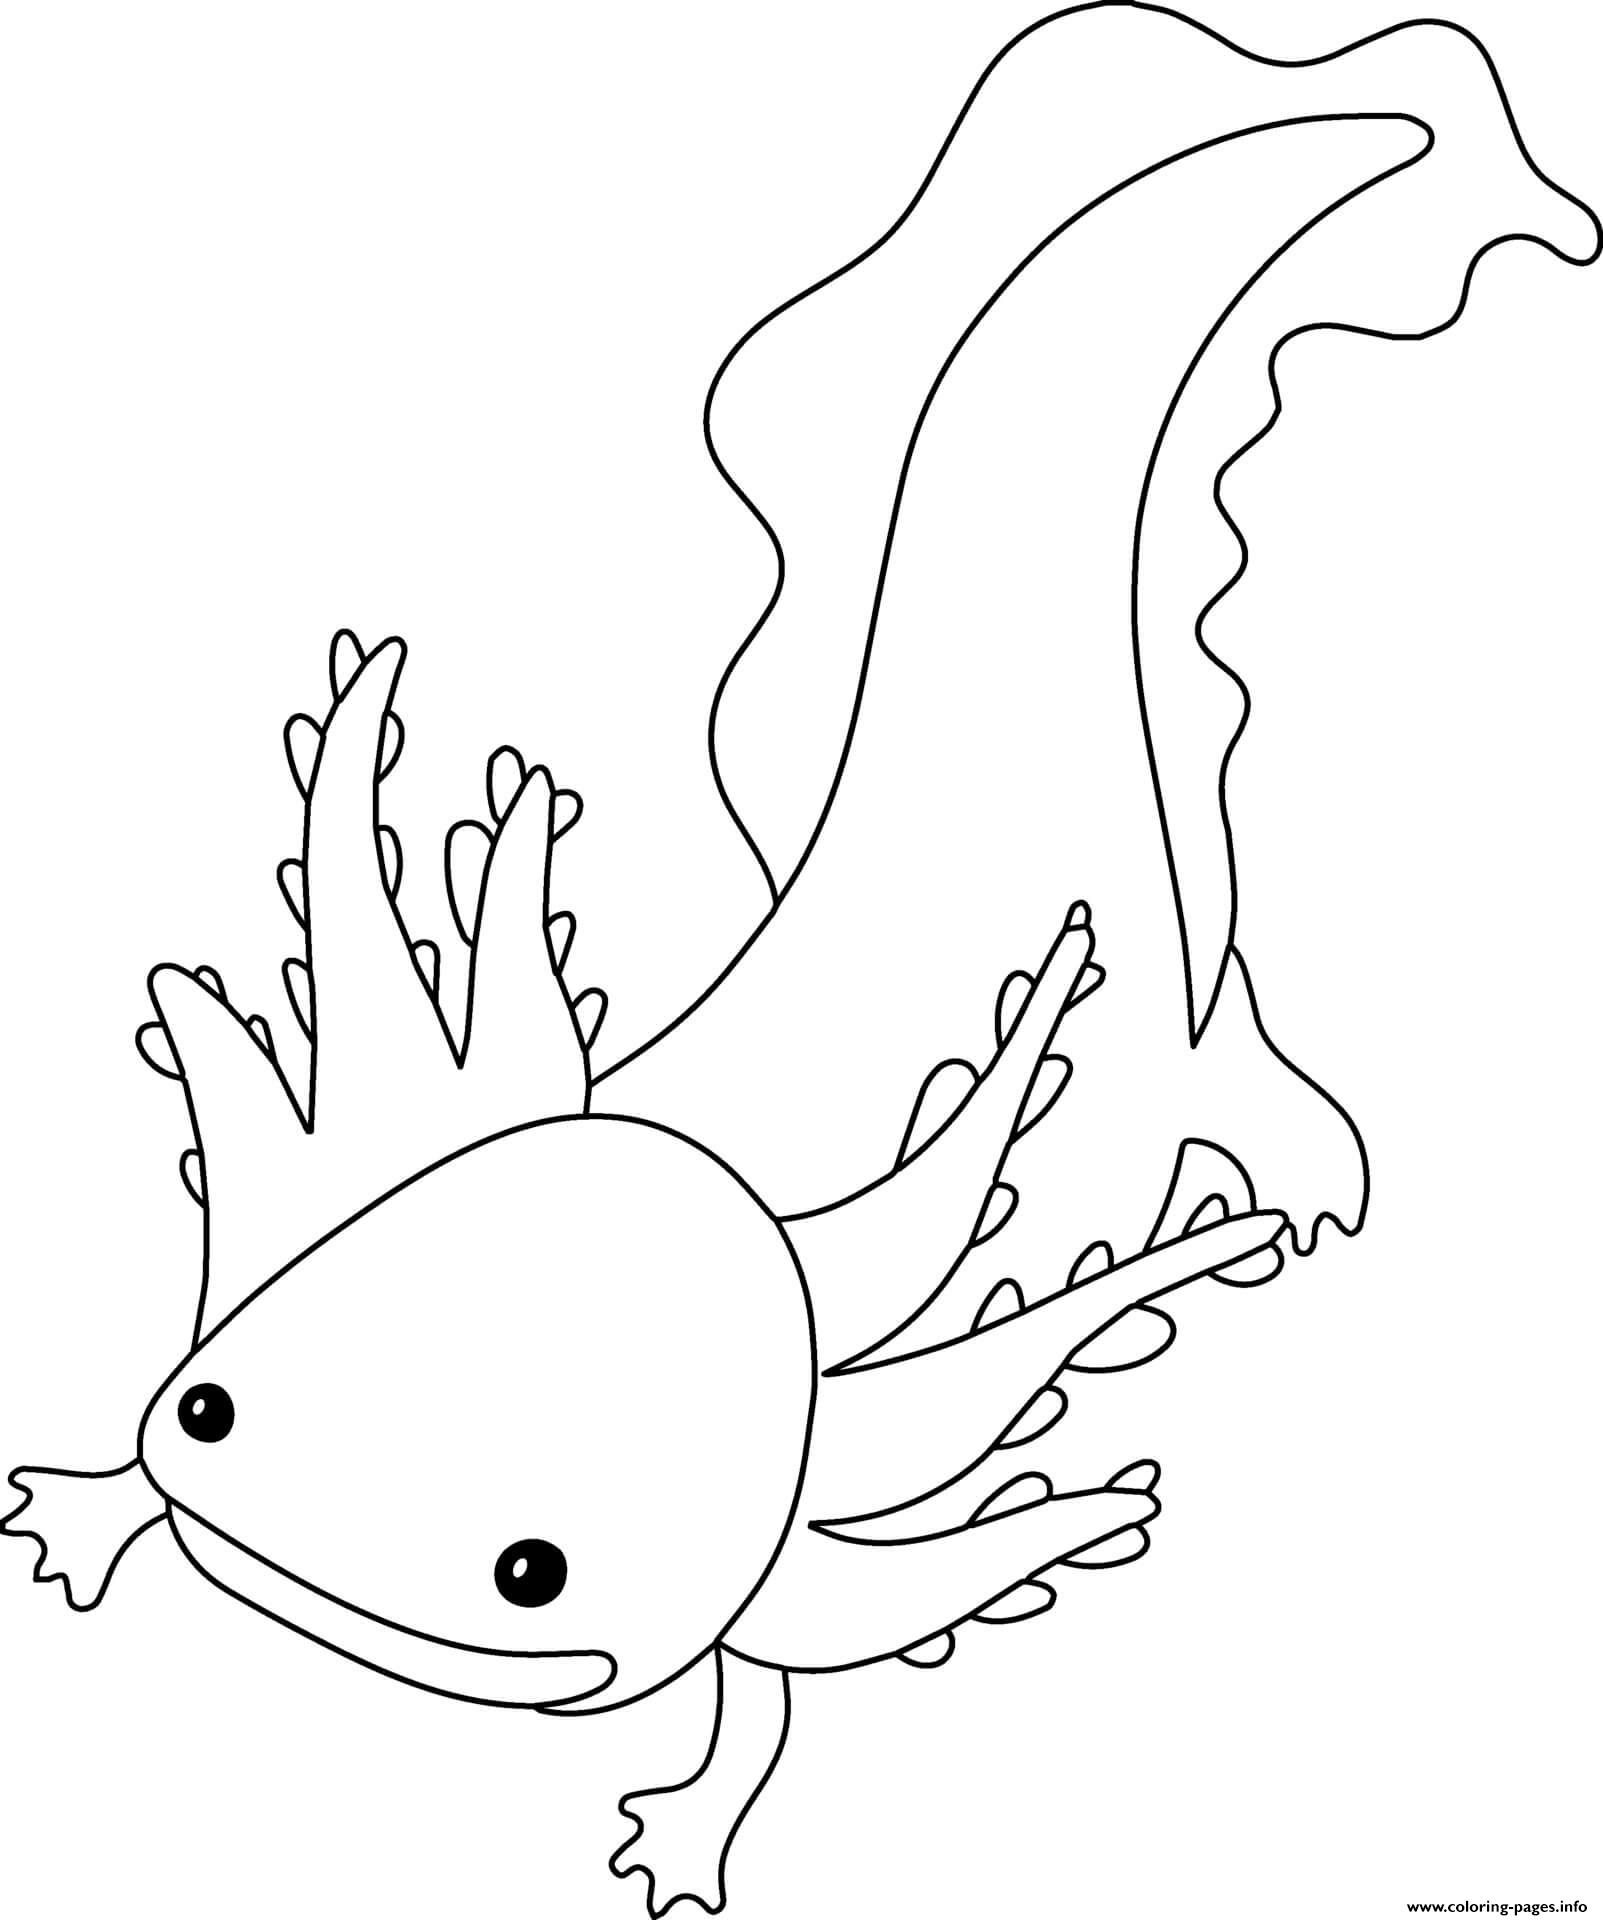 Axolotl coloring